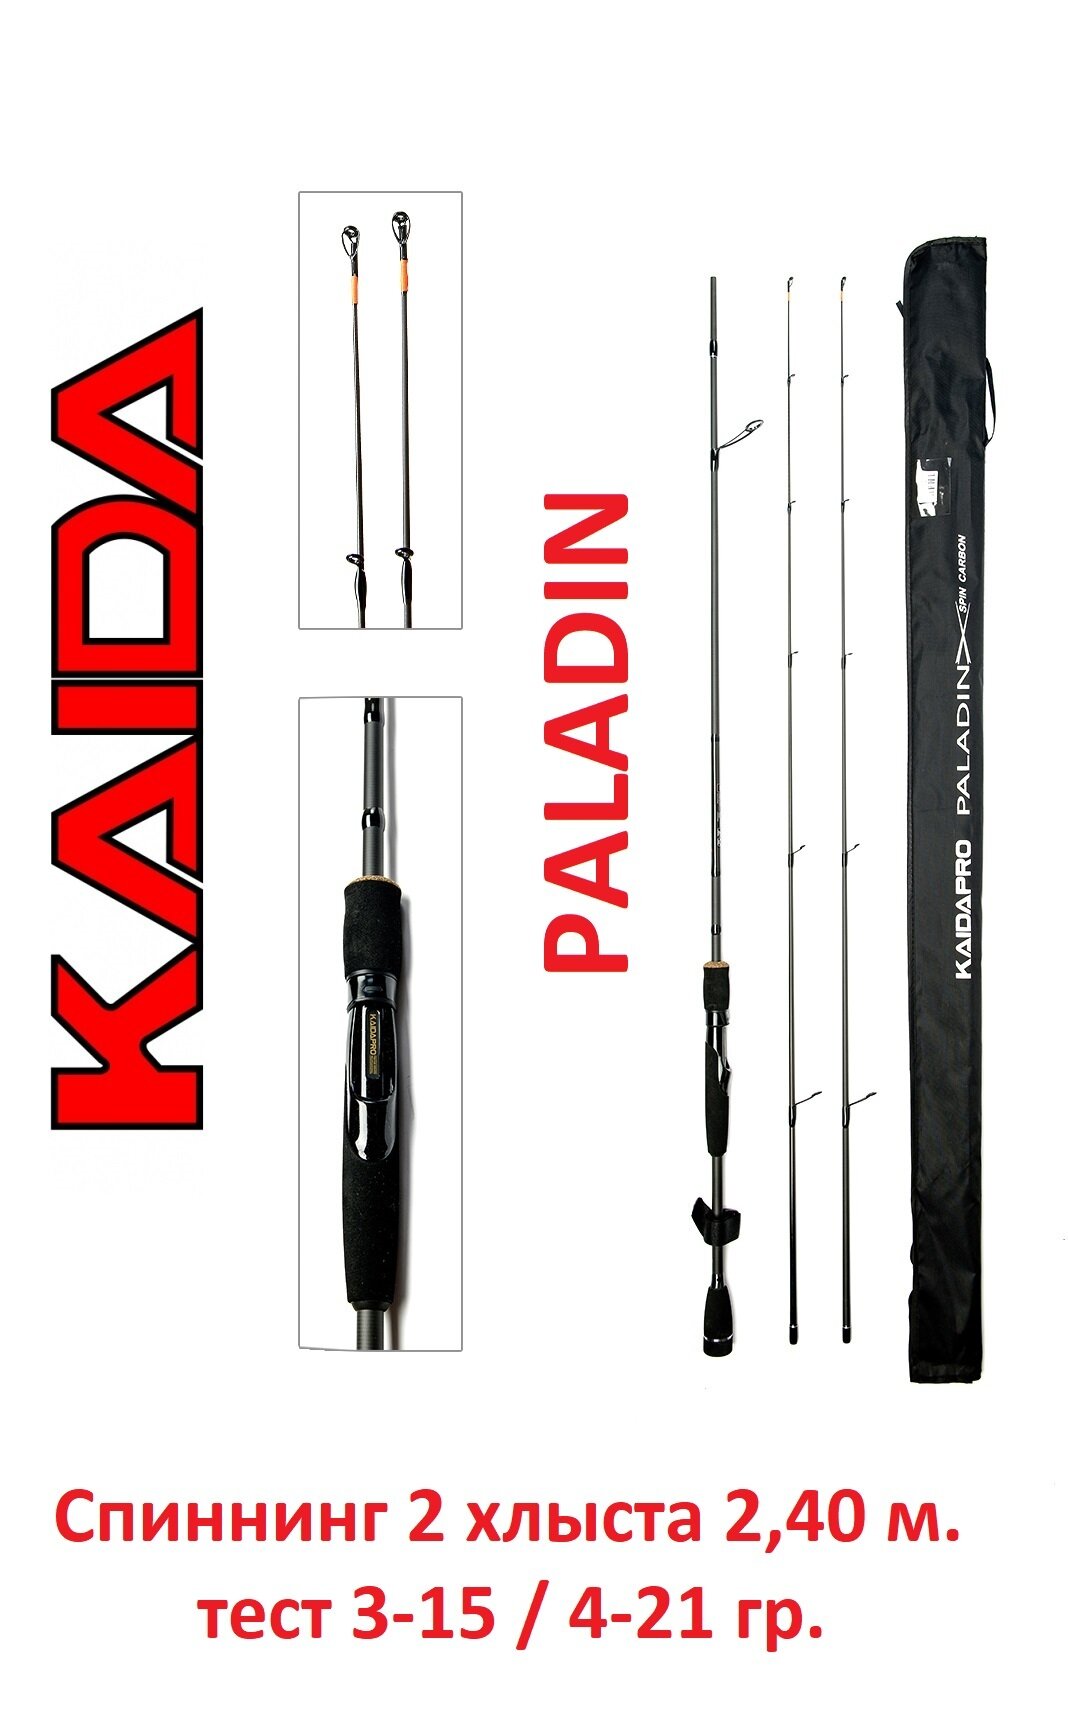 Спиннинг Kaida Paladin 2,40 метра тест 3-15 и 4-21 гр. (2 хлыста)